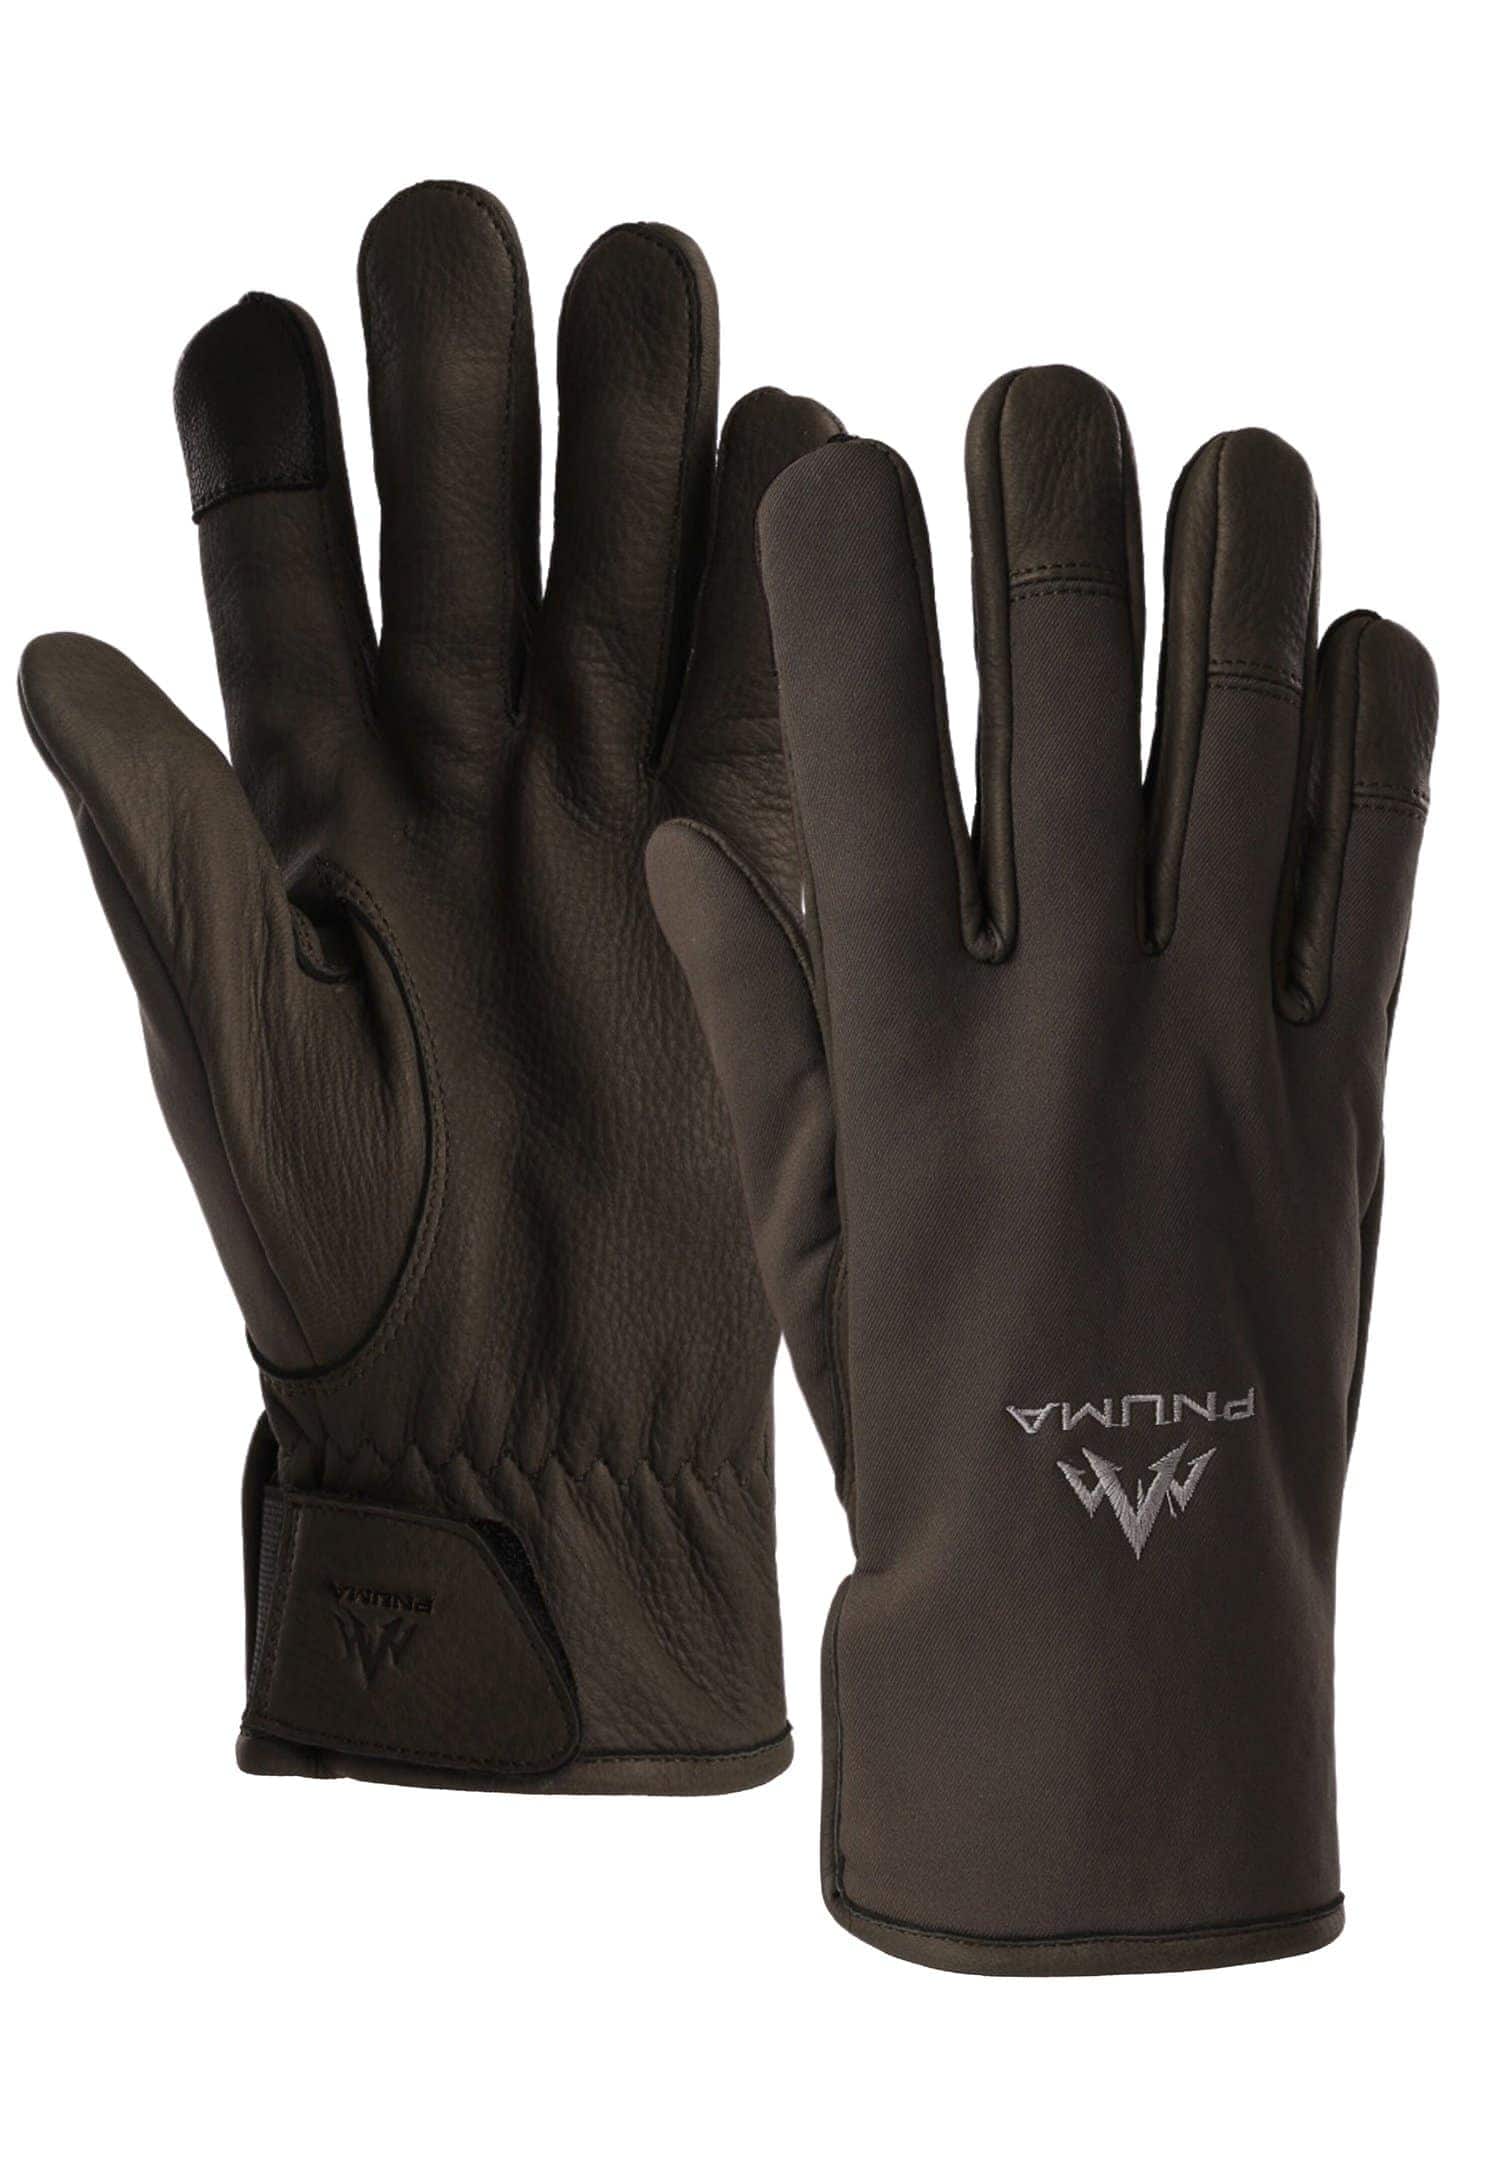 Waypoint Glove